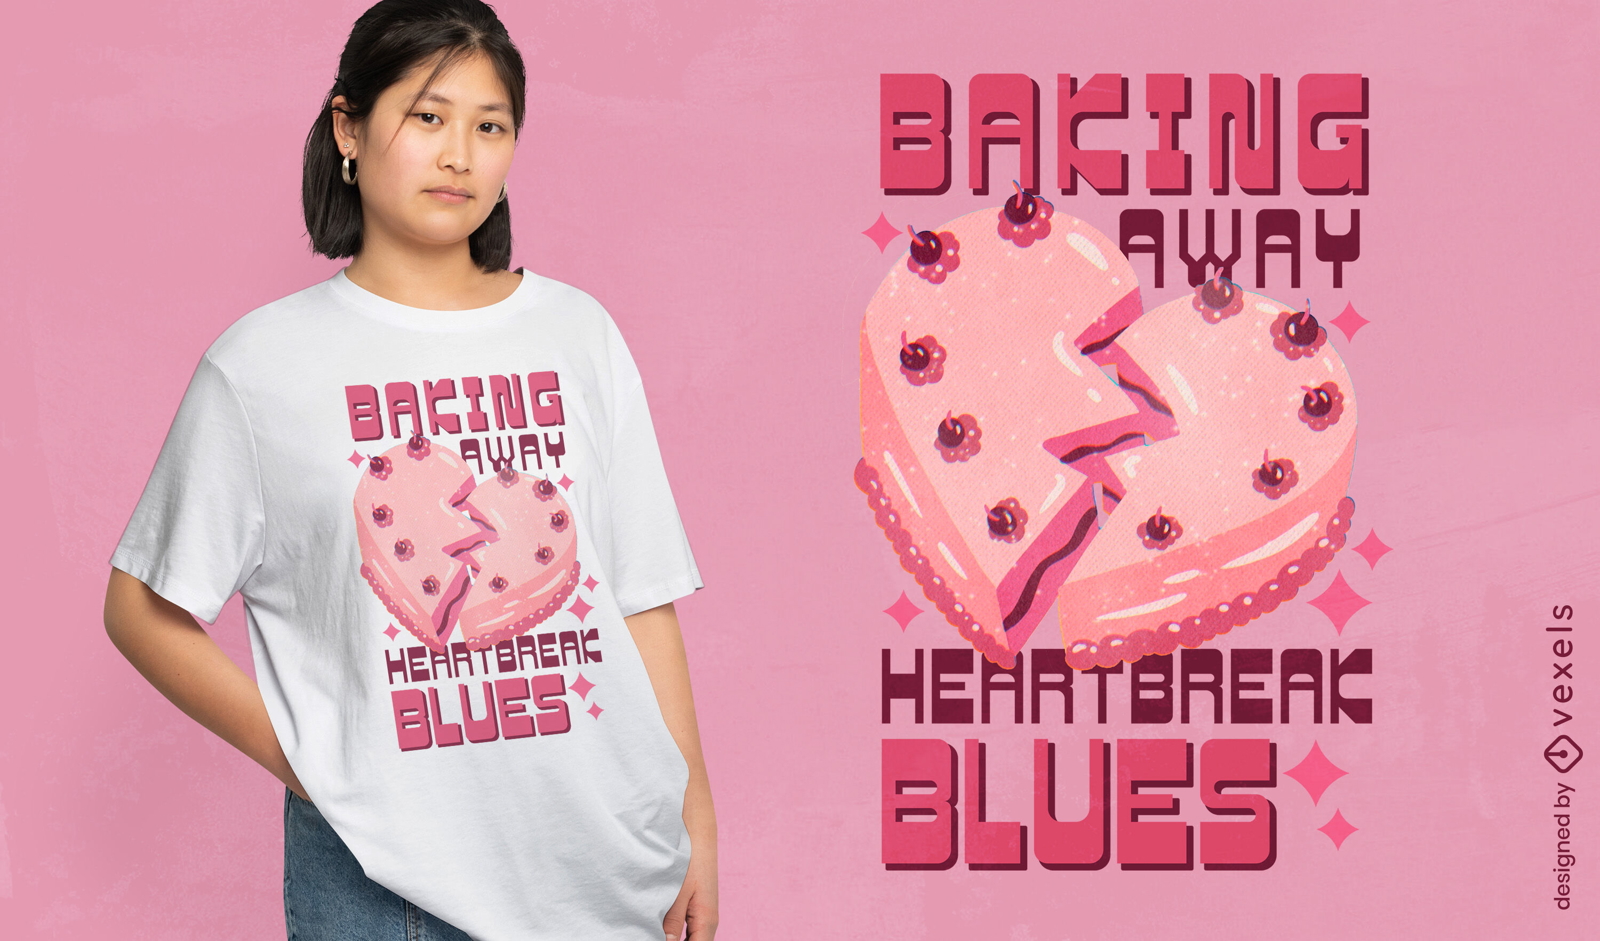 Heartbreak cake t-shirt design